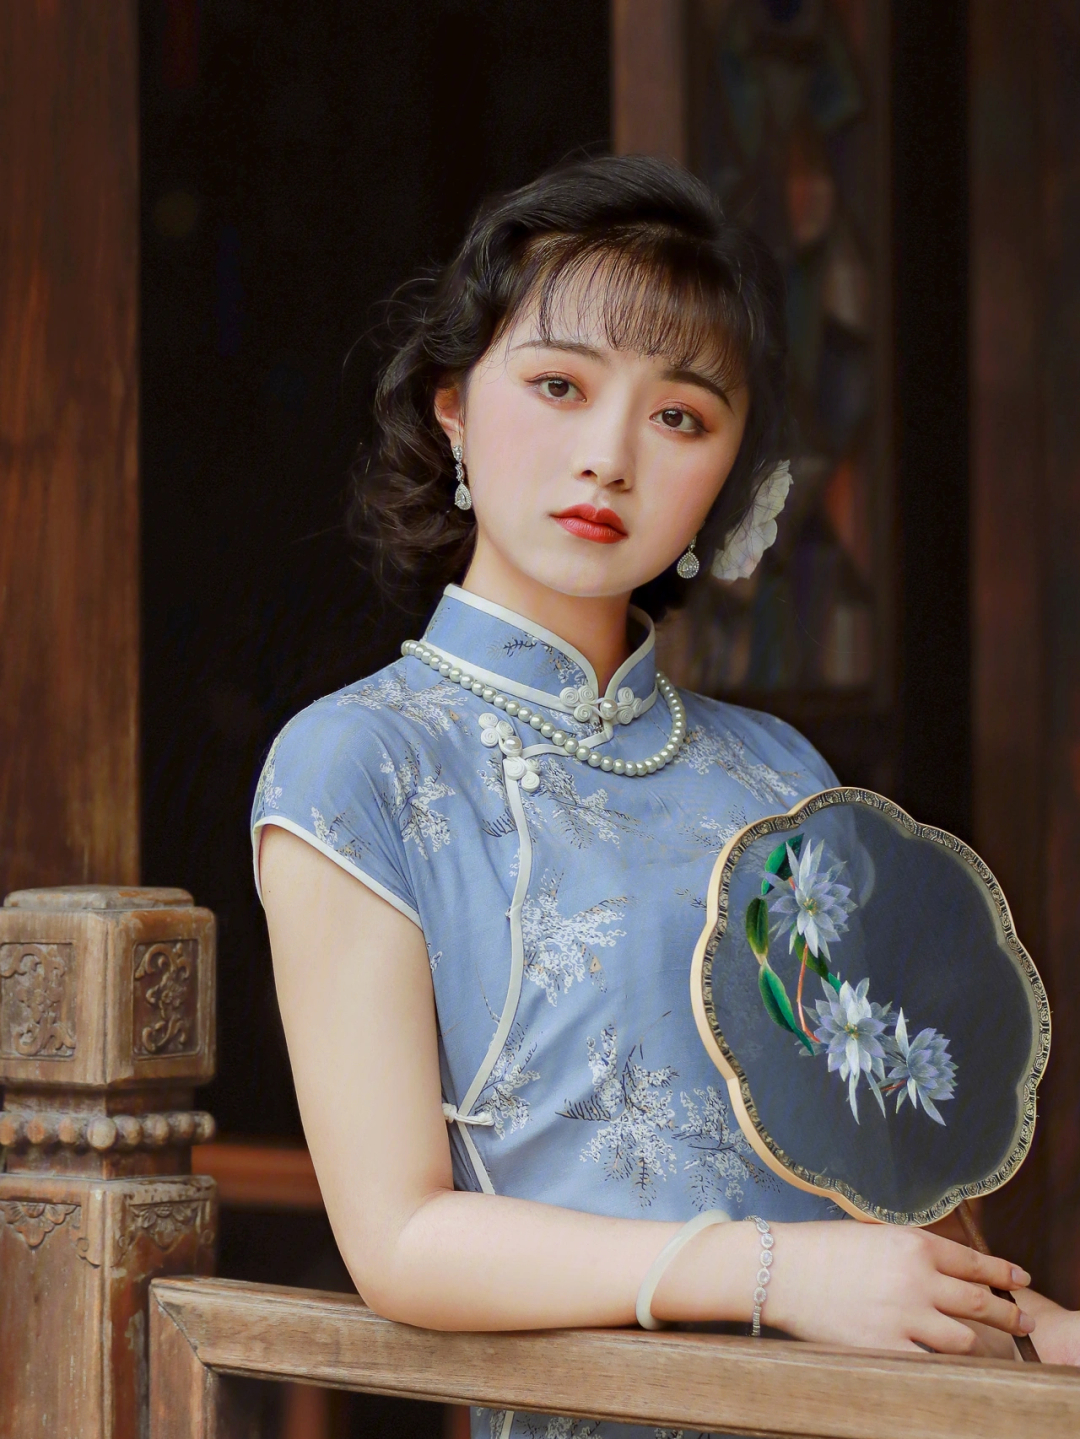 民国画报上的复古美人儿杭州约拍旗袍